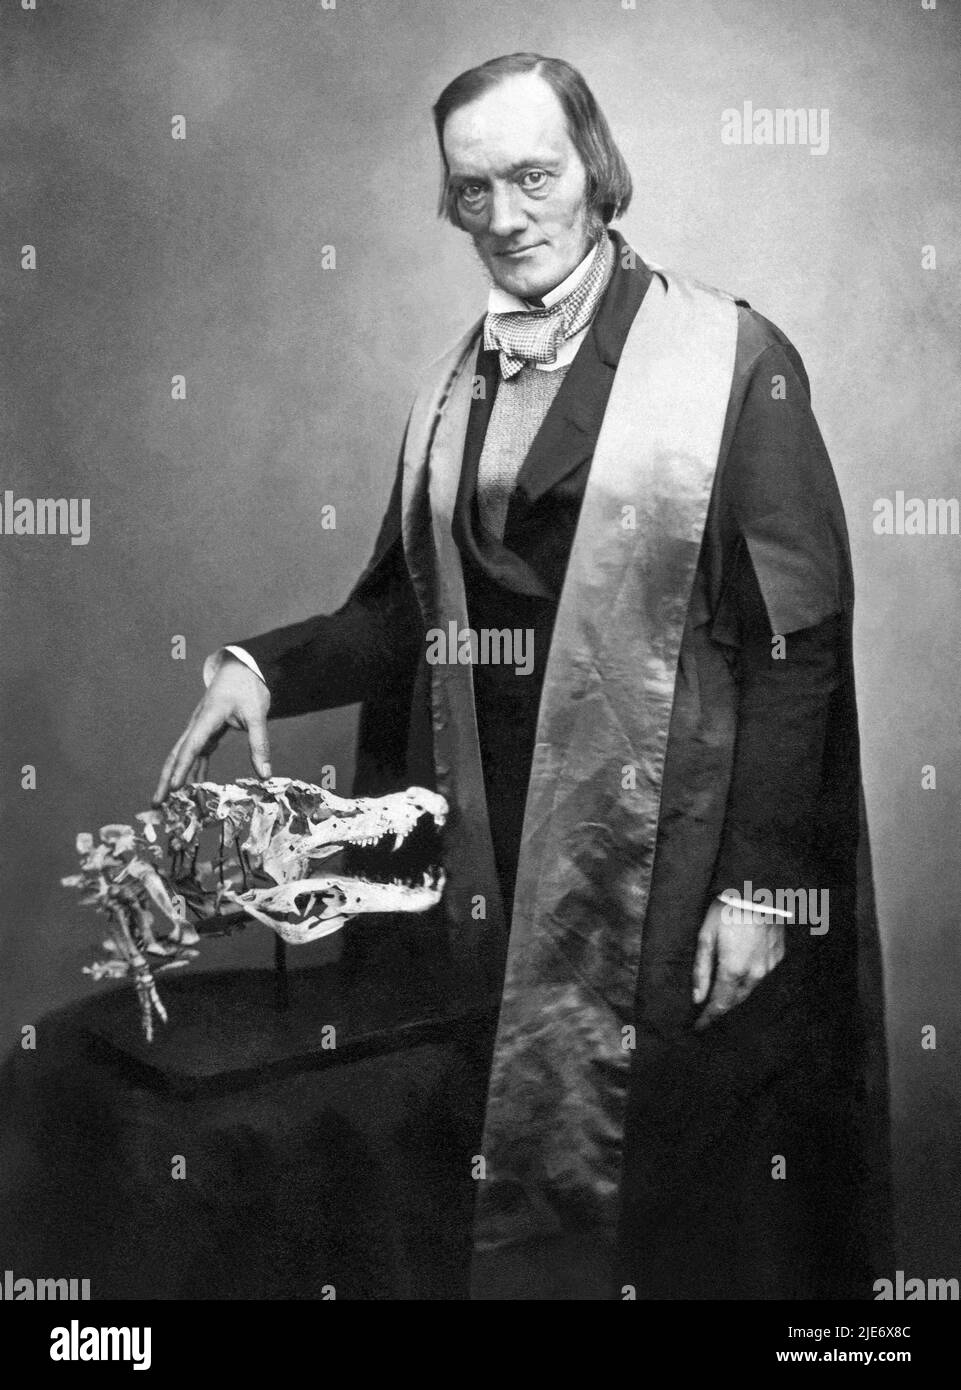 Sir Richard Owen KCB FRS (1804-1892) Biólogo inglés, anatomista comparativo y paleontólogo que acuñó el término dinosauria, del cual derivamos la palabra dinosaurio. Owen fue un crítico franco de la teoría de la evolución de Charles Darwin por la selección natural. Foto: 1856. Foto de stock